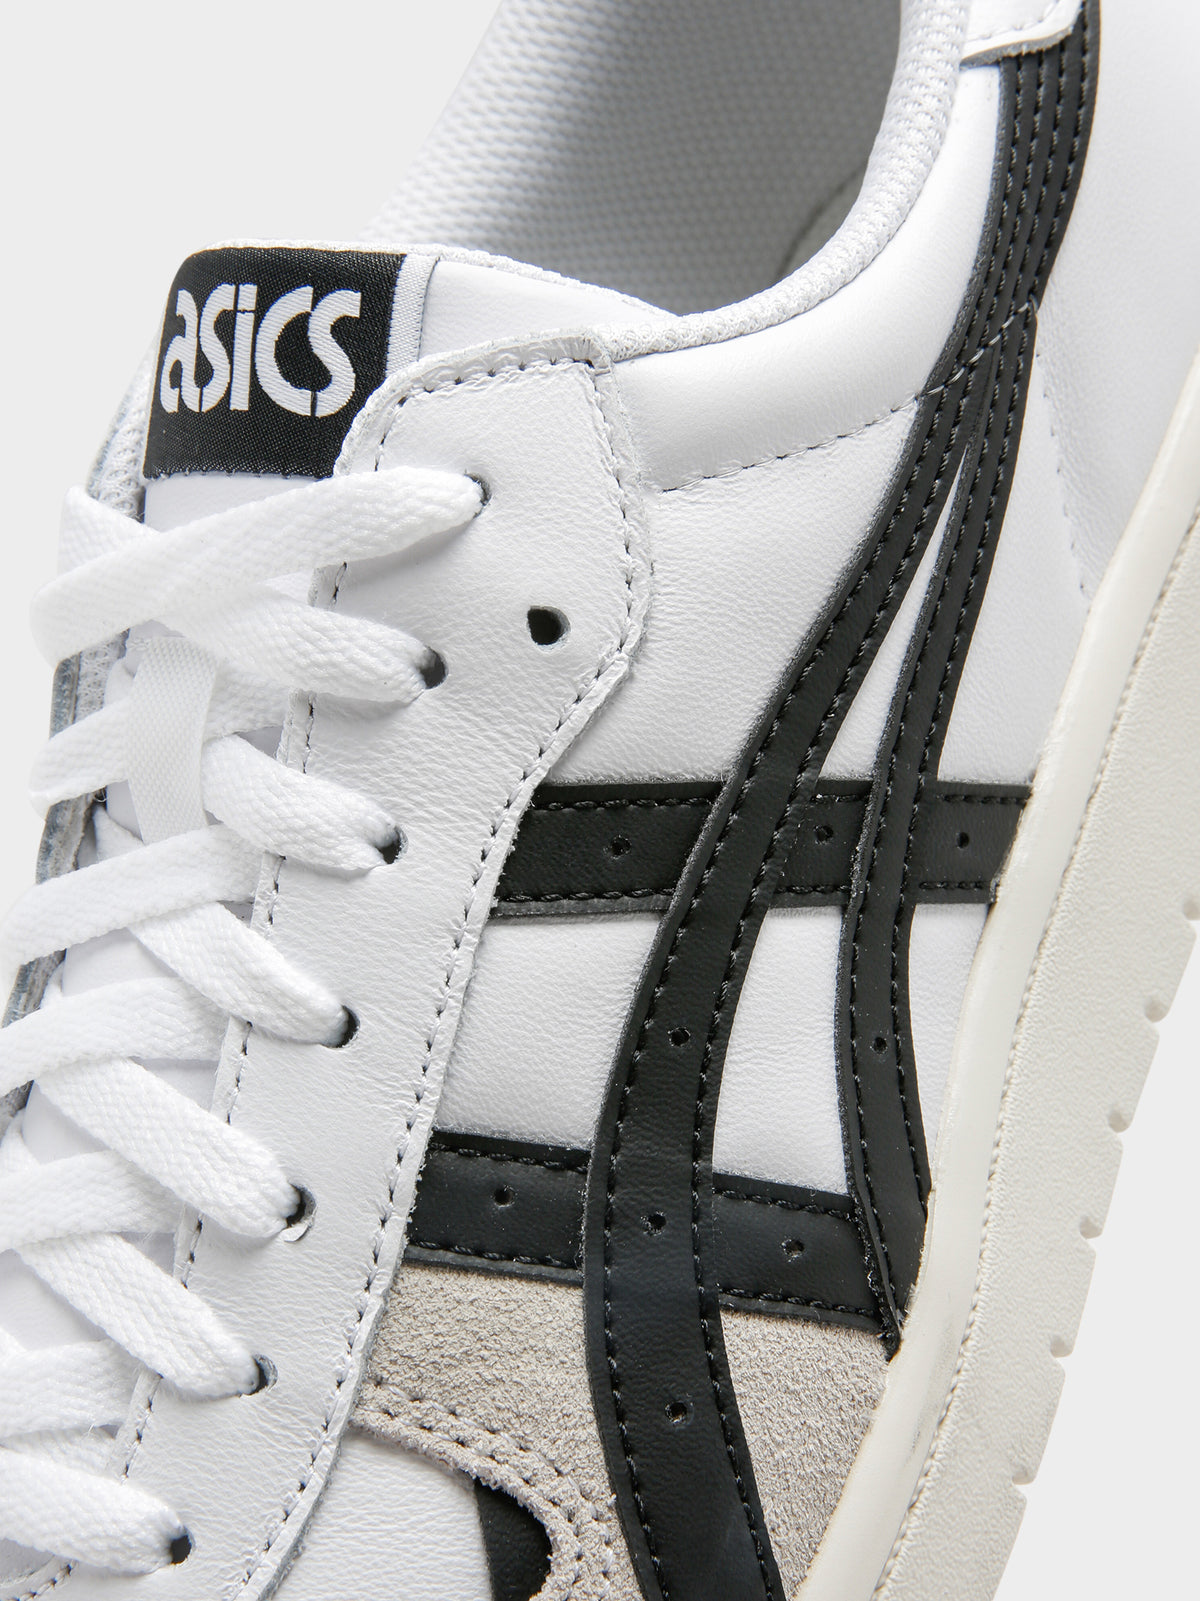 Asics Mens Japan S Sneakers in White & Black | White/Black